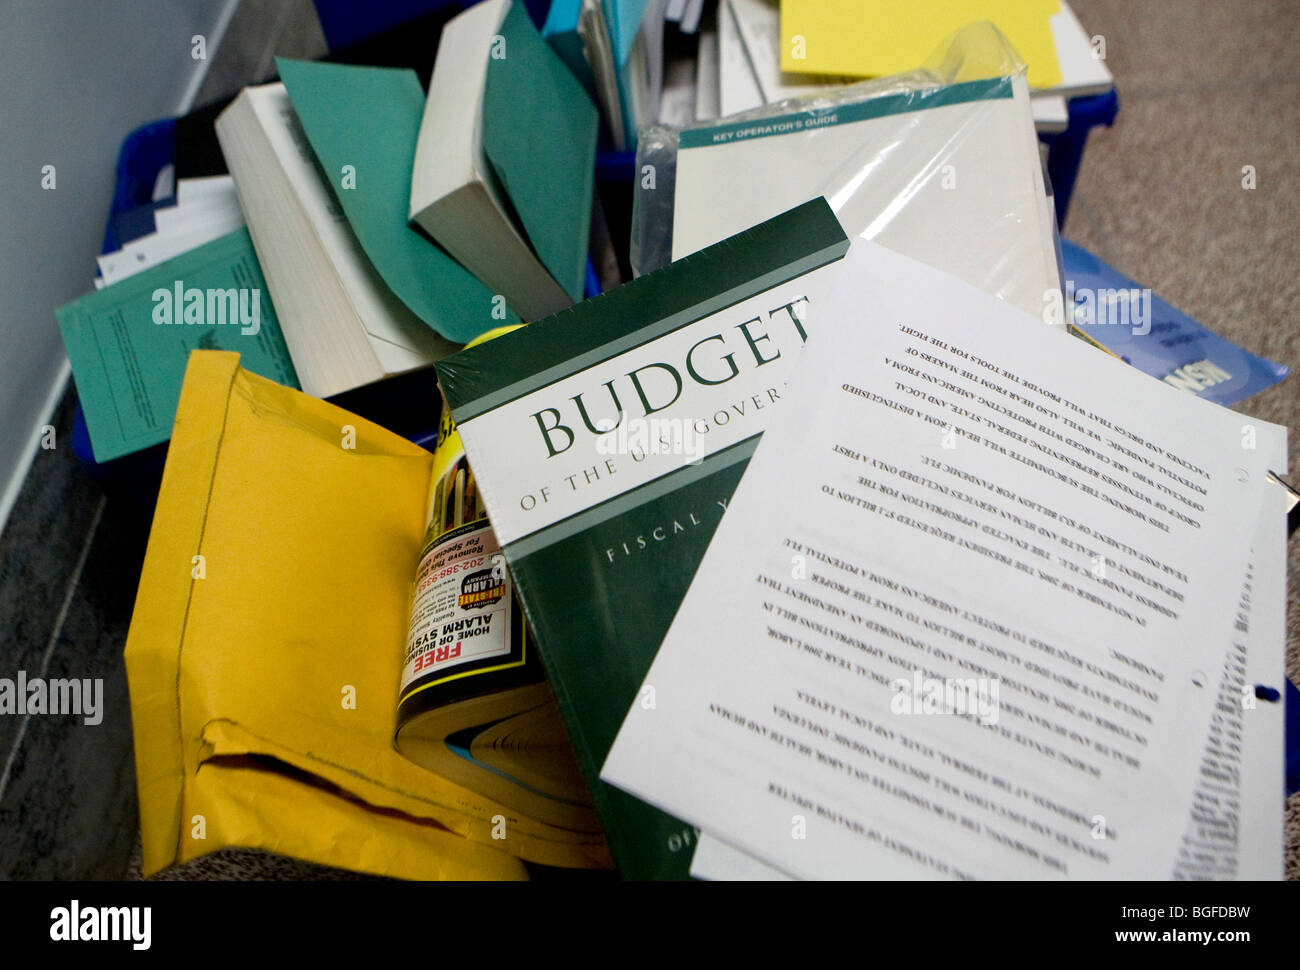 20 mai 2009 – Washington, D.C. – UNE copie abandonnée du budget fédéral encore dans son emballage est placée dans une corbeille à l'extérieur d'un bureau dans l'édifice Dirksen du Sénat. Banque D'Images